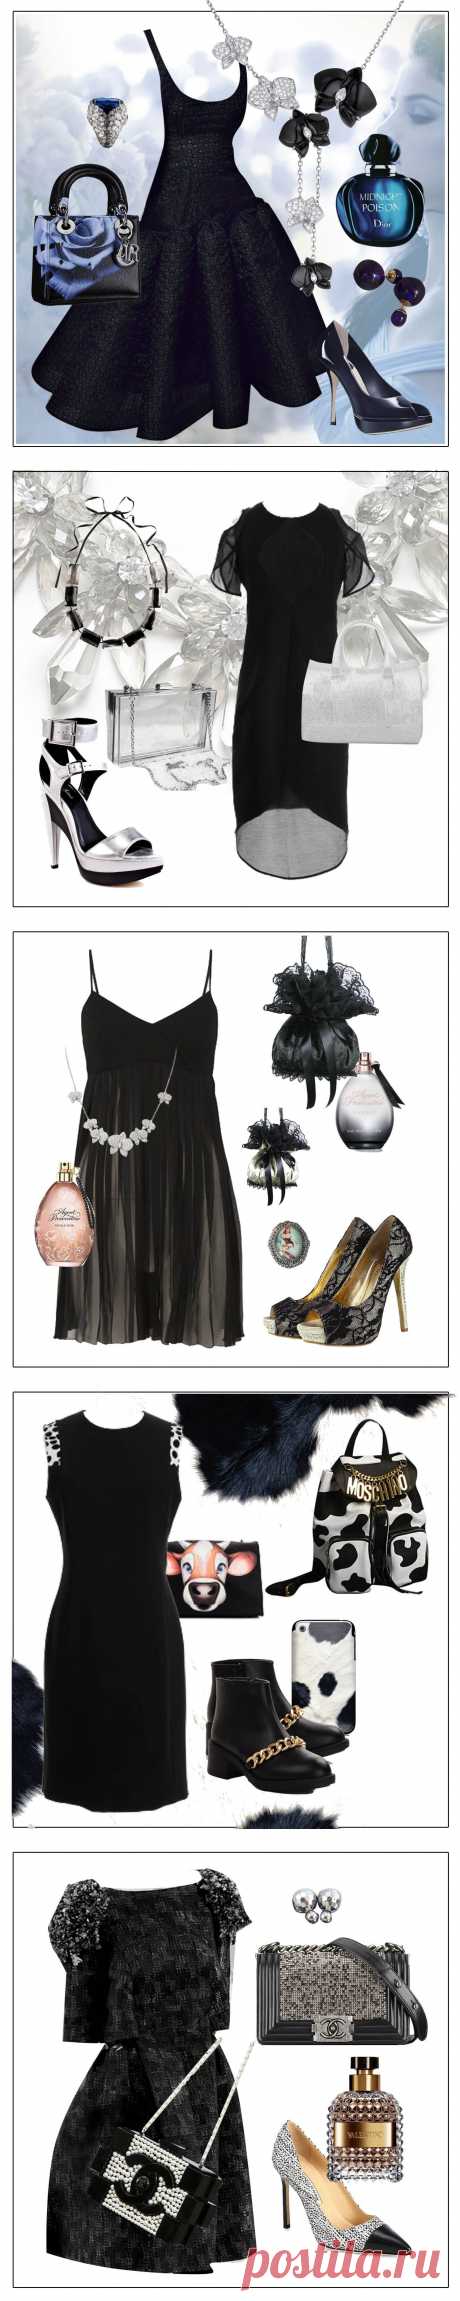 С чем носить чёрное платье — фото модных сочетаний 2015 [modnaya24.com]